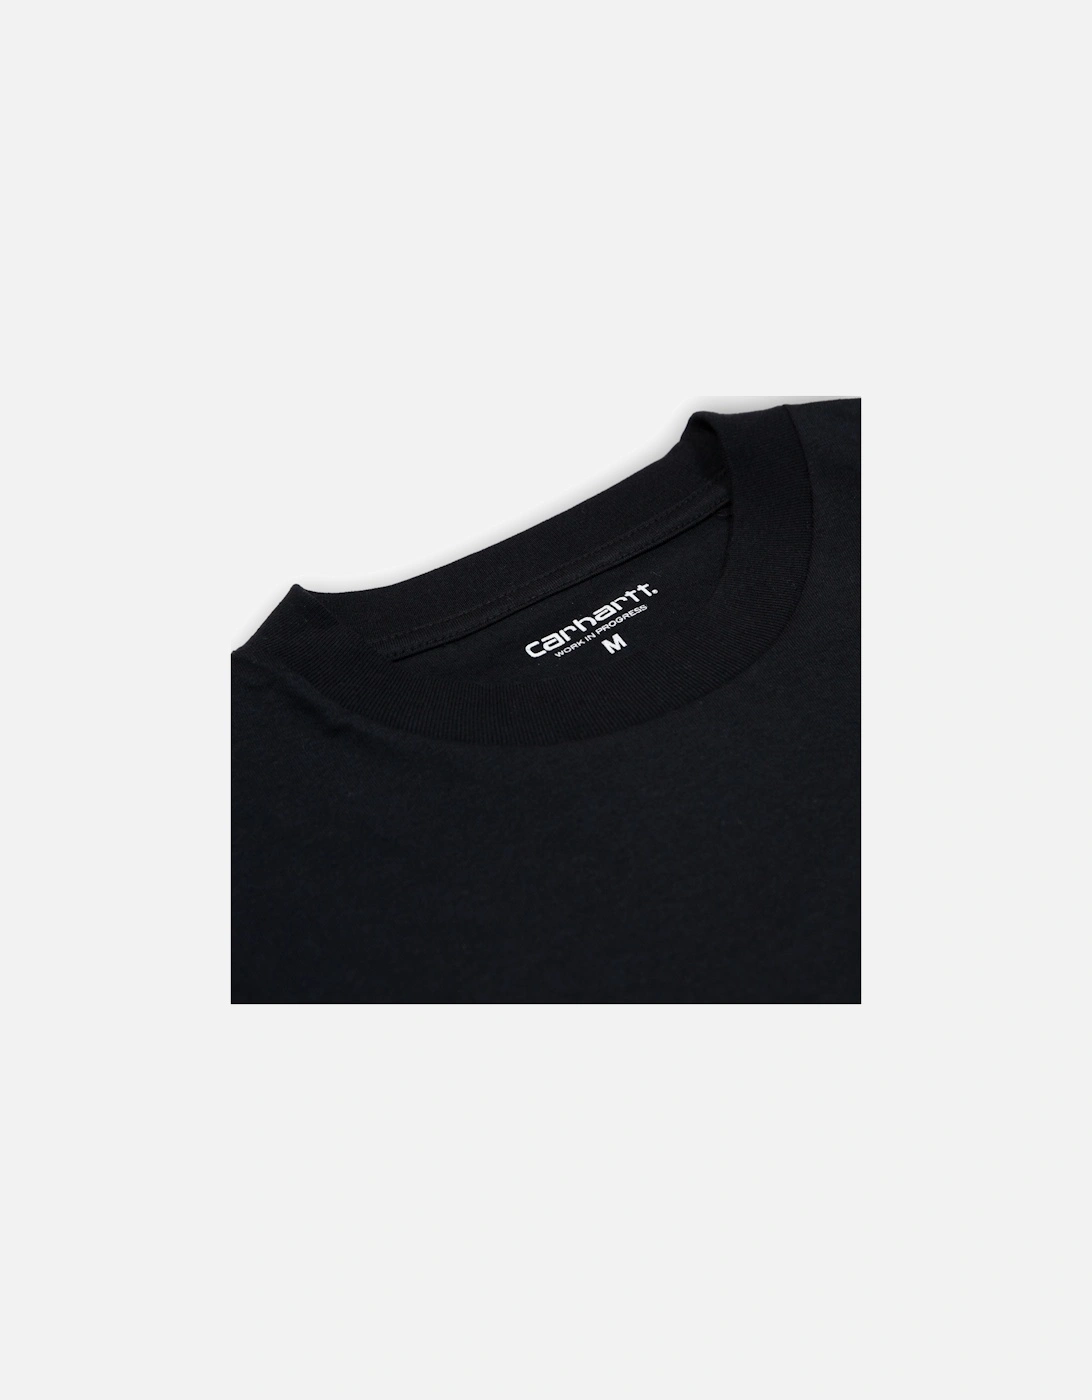 Rocky T-Shirt - Black